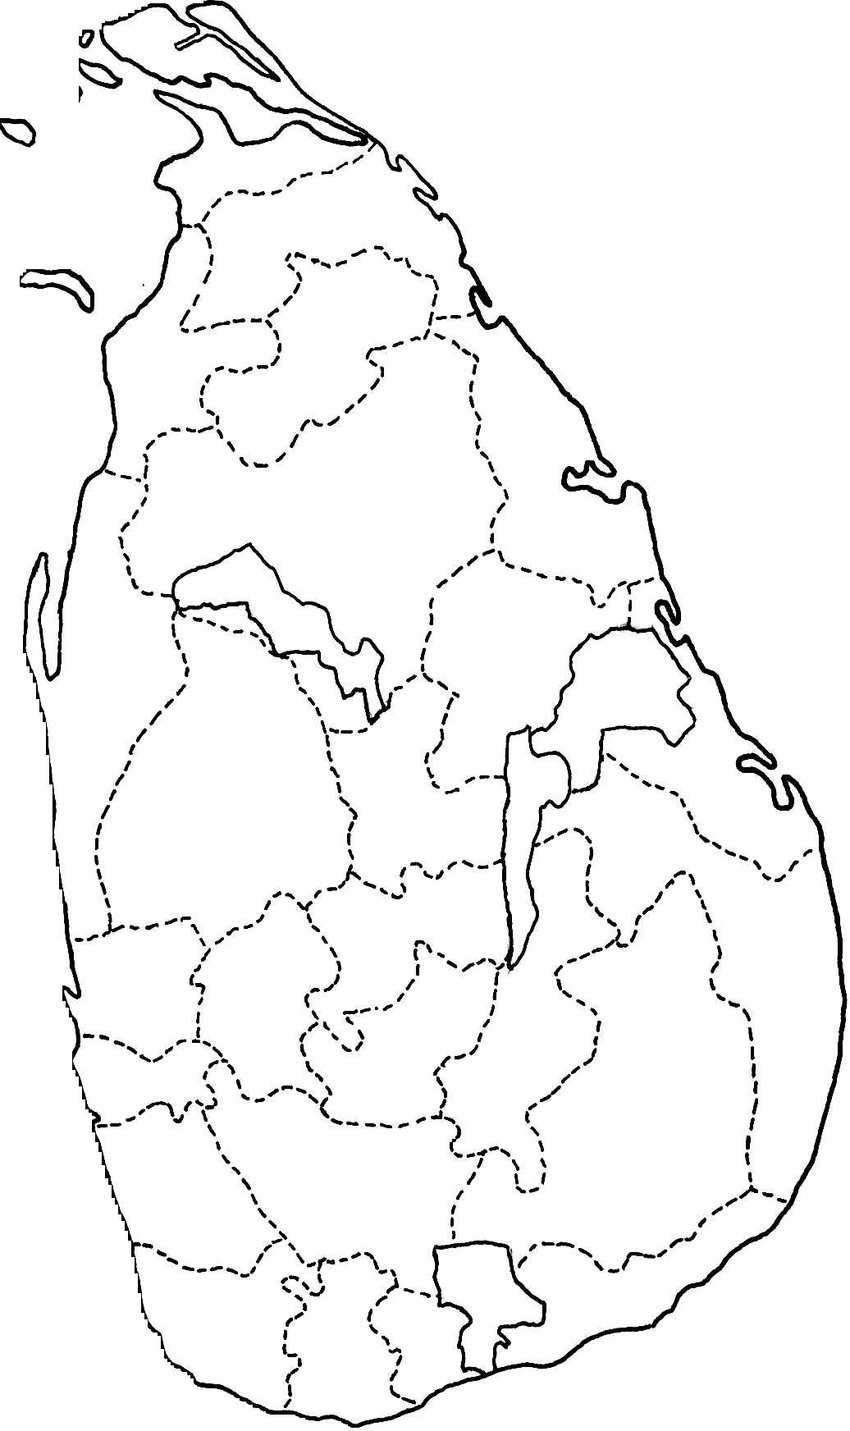 download sri lanka district map pdf